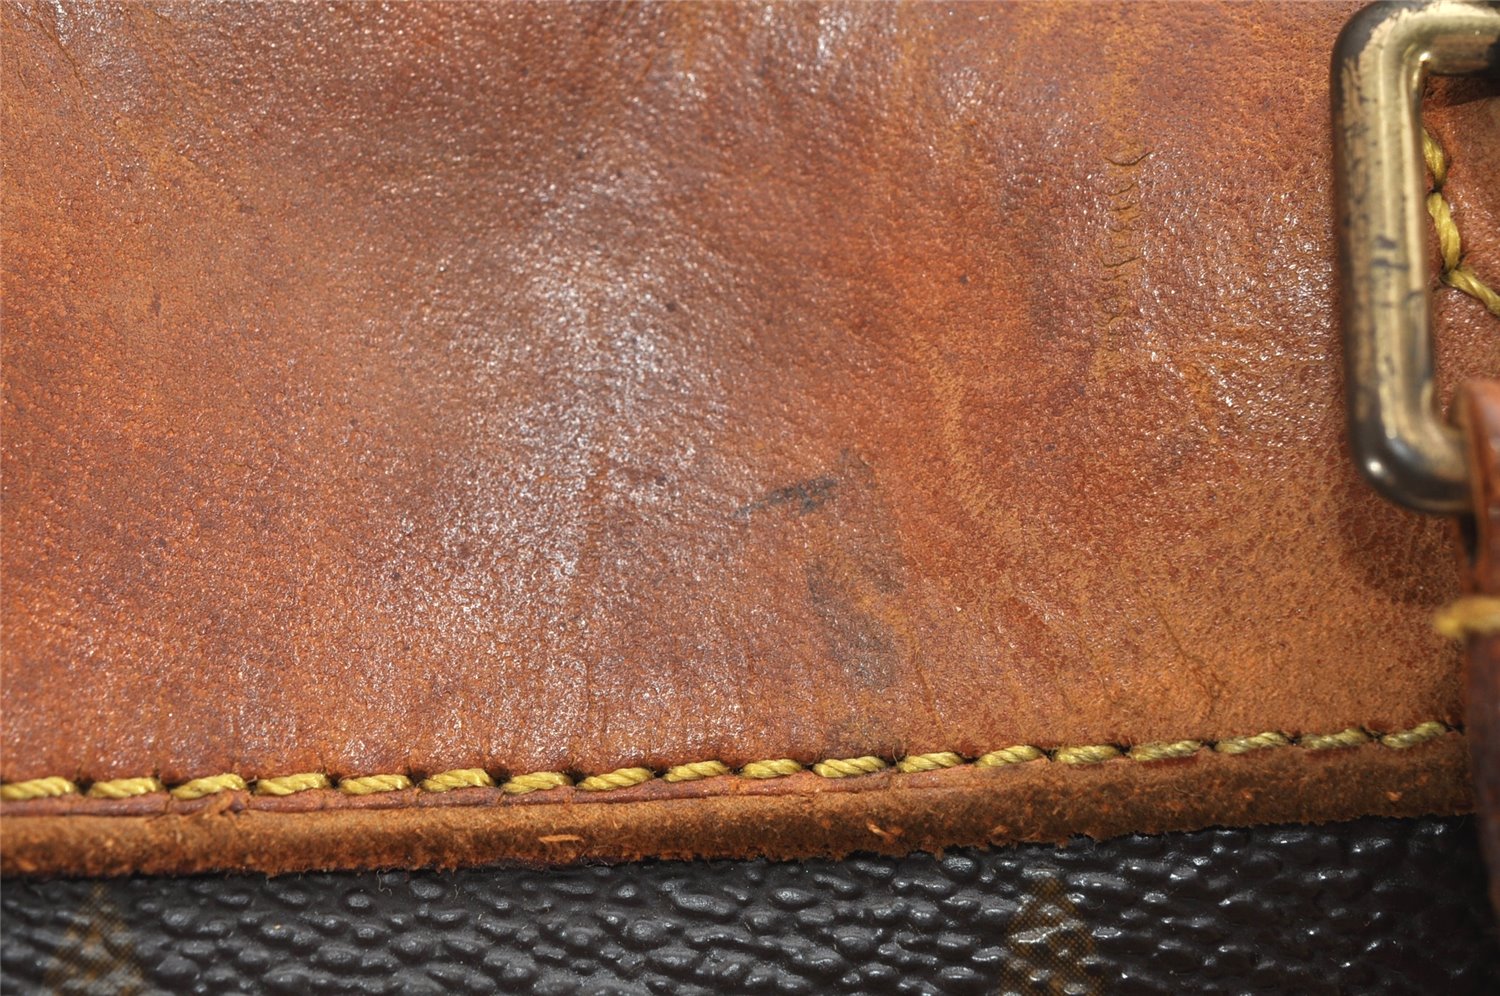 Authentic Louis Vuitton Monogram Deauville Hand Bag M47270 LV 9985J